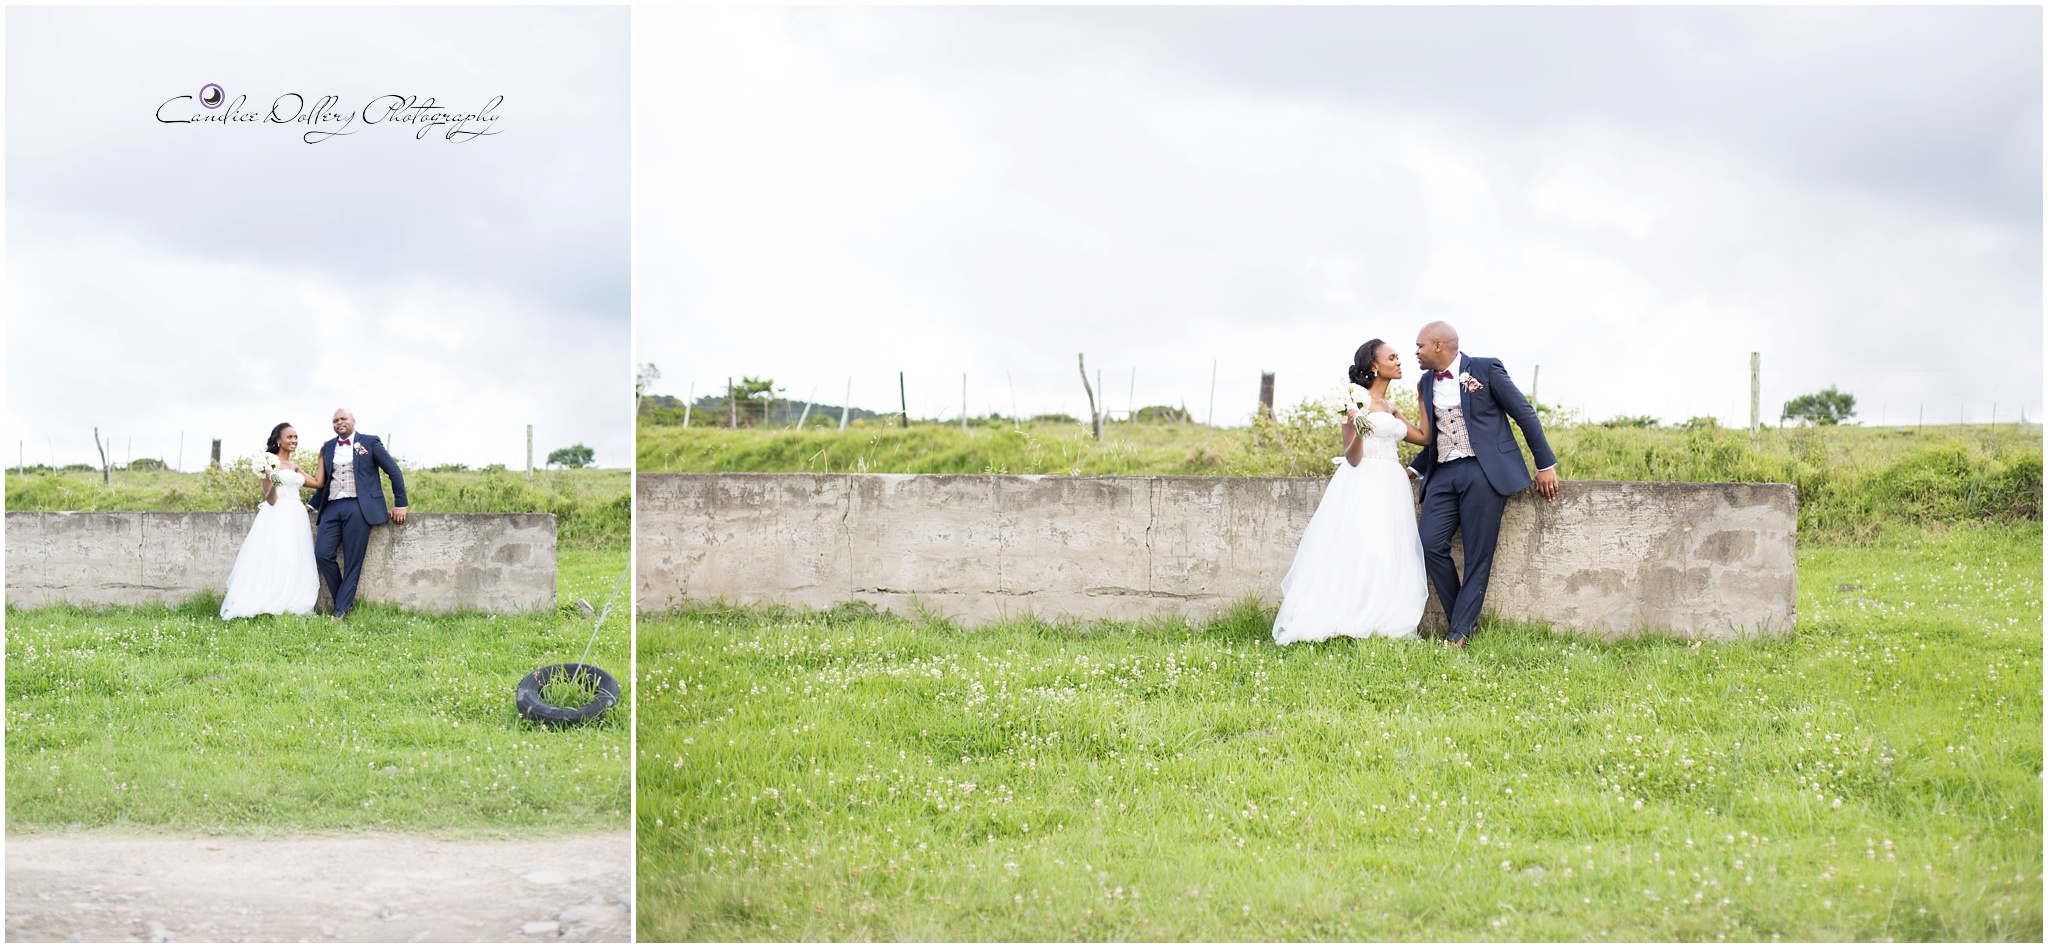 Buyi & Nathi's Wedding - Candice Dollery Photography_8430